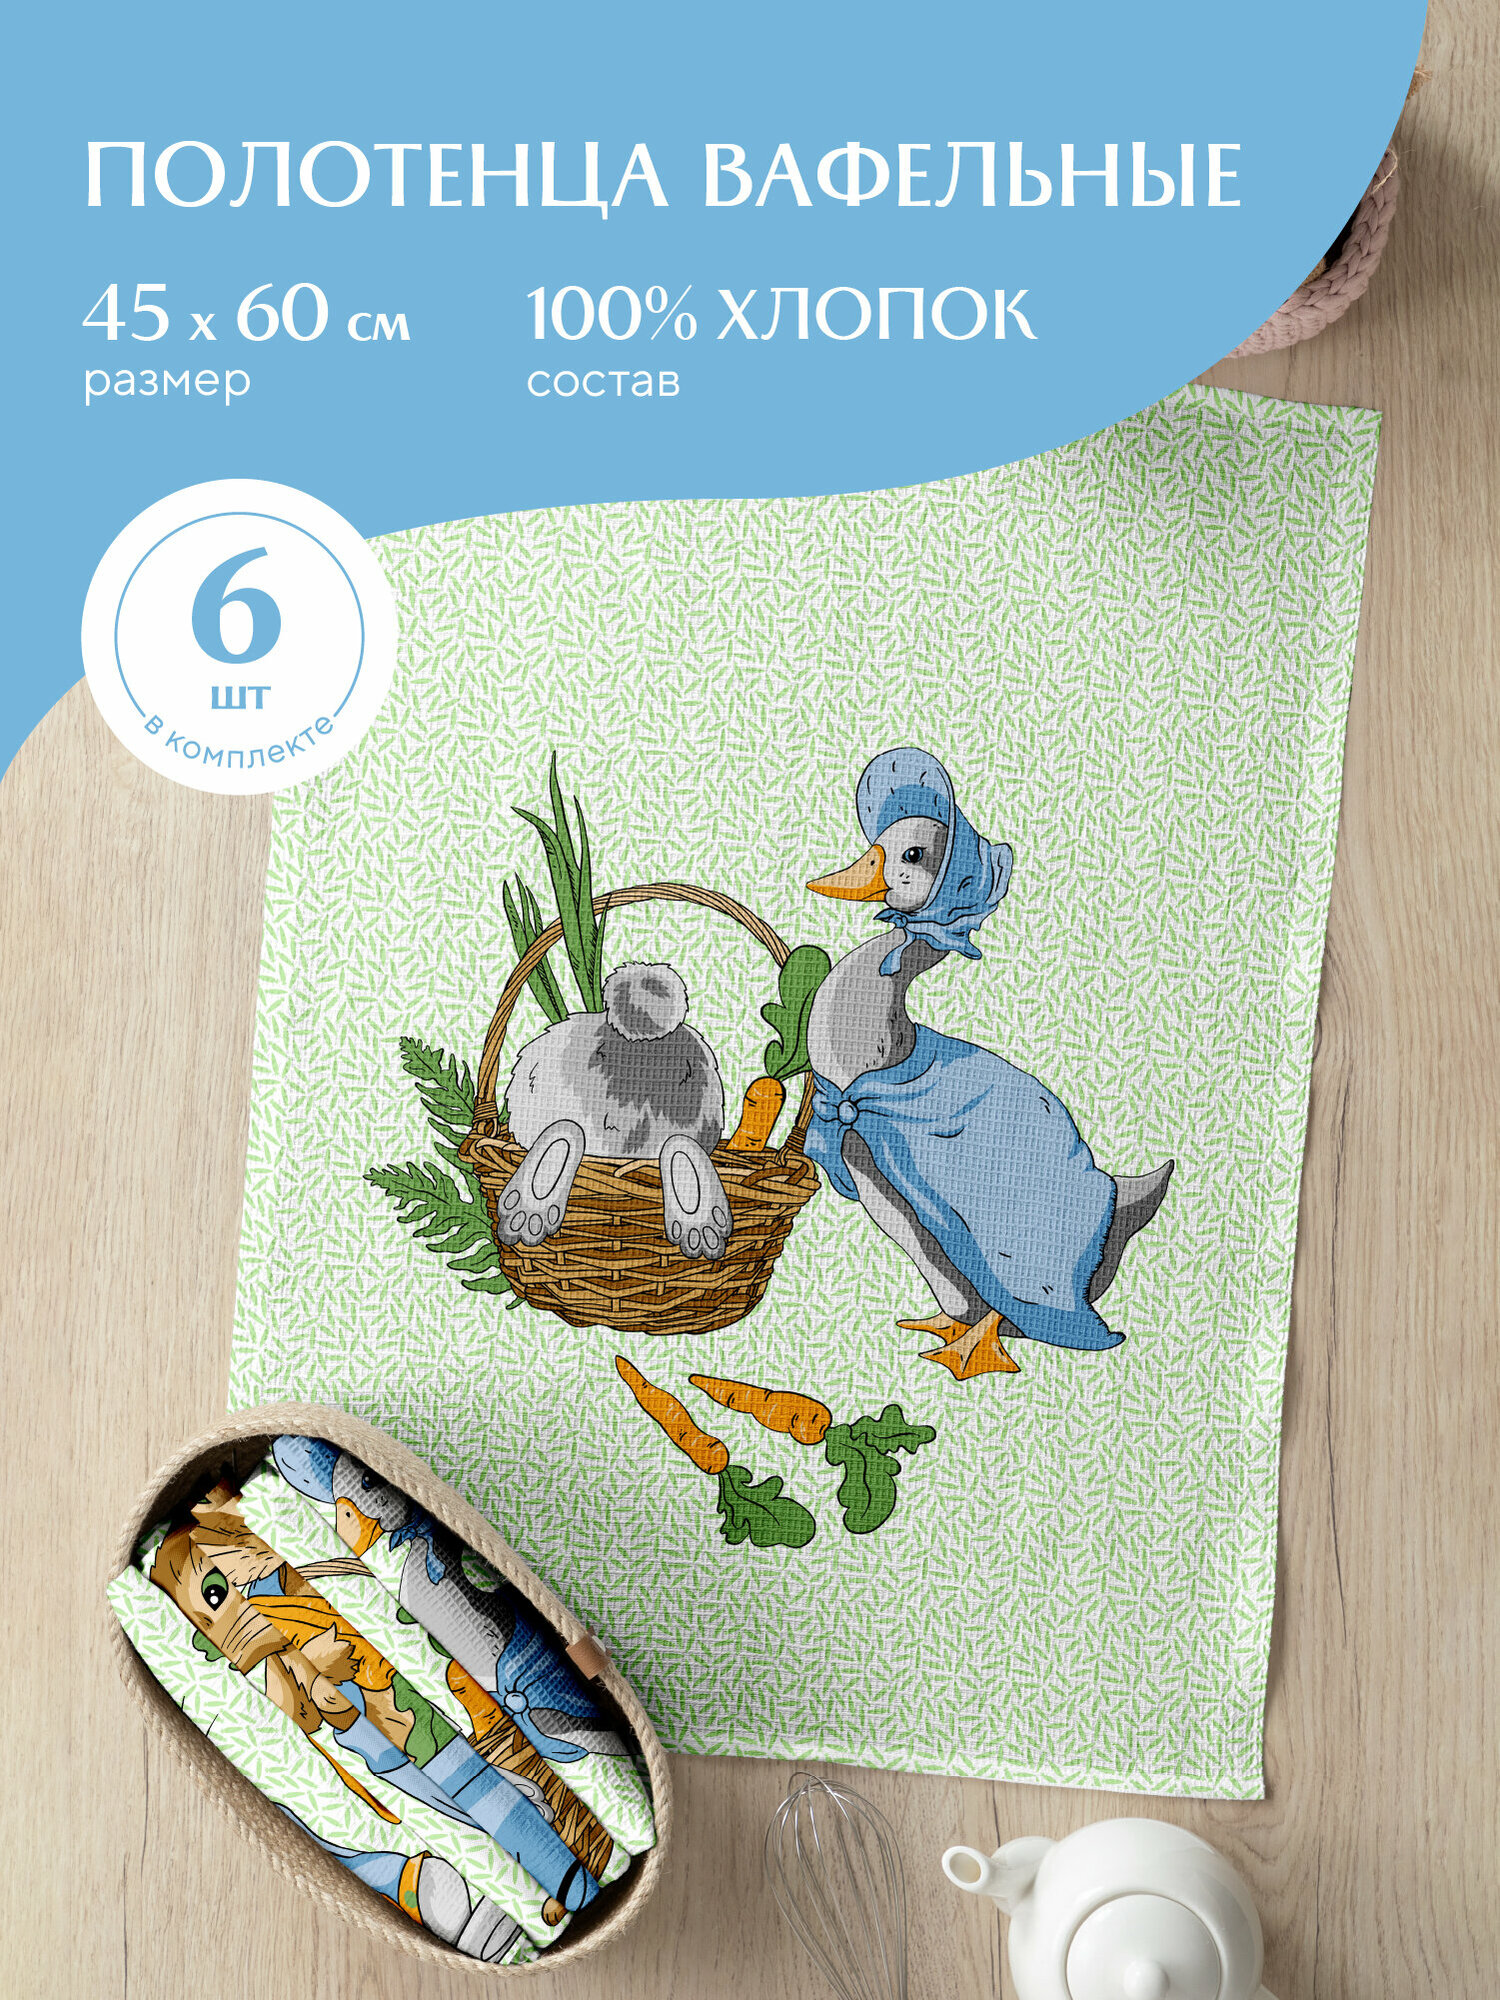 Набор вафельных полотенец 45х60 (6 шт.) "Mia Cara" рис 30632-1 Garden bunny - фотография № 13